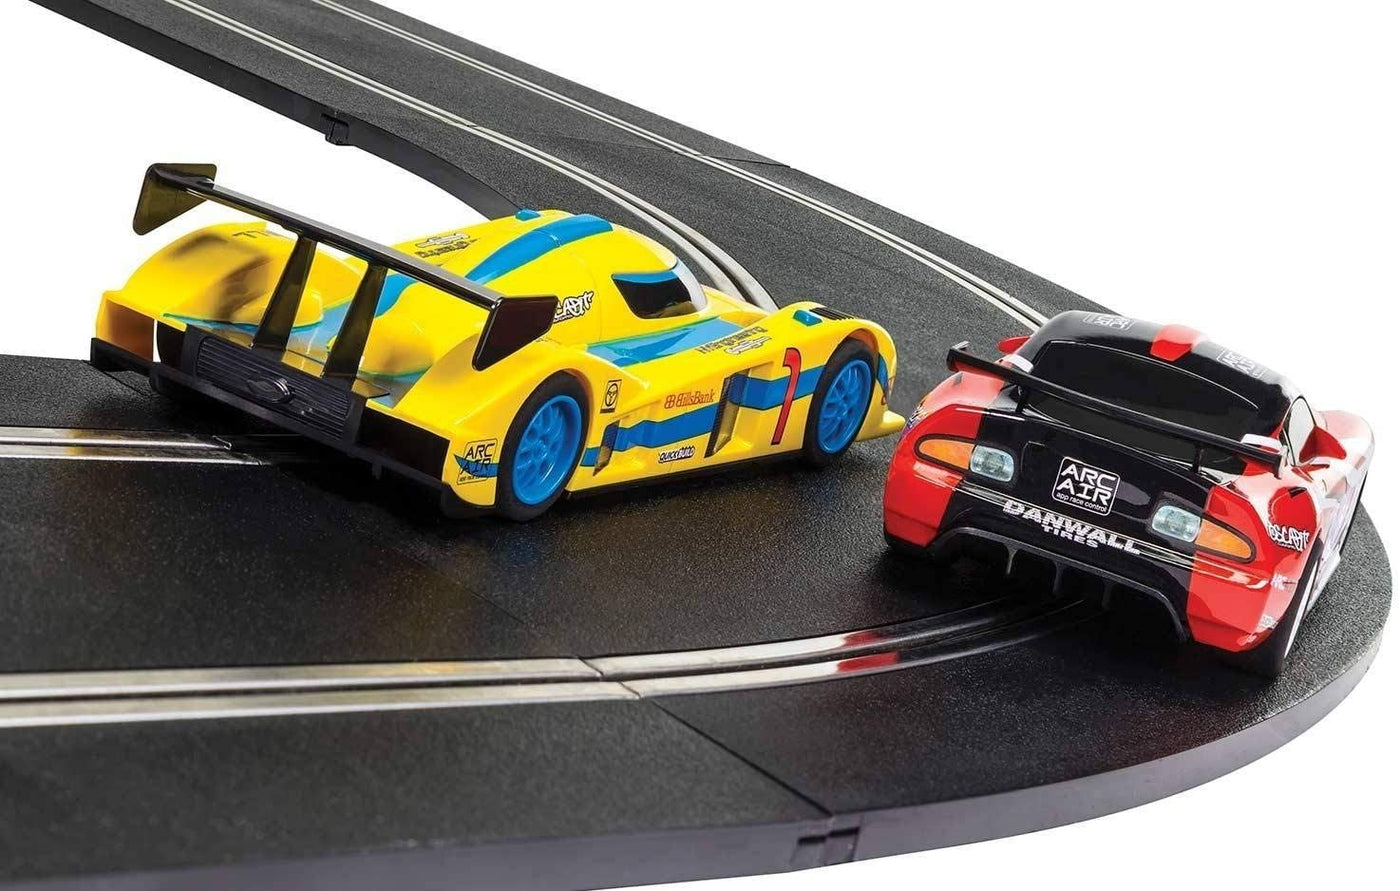 Speed Supreme GT vs. LMP 1:32 Slot Car Race Track Set